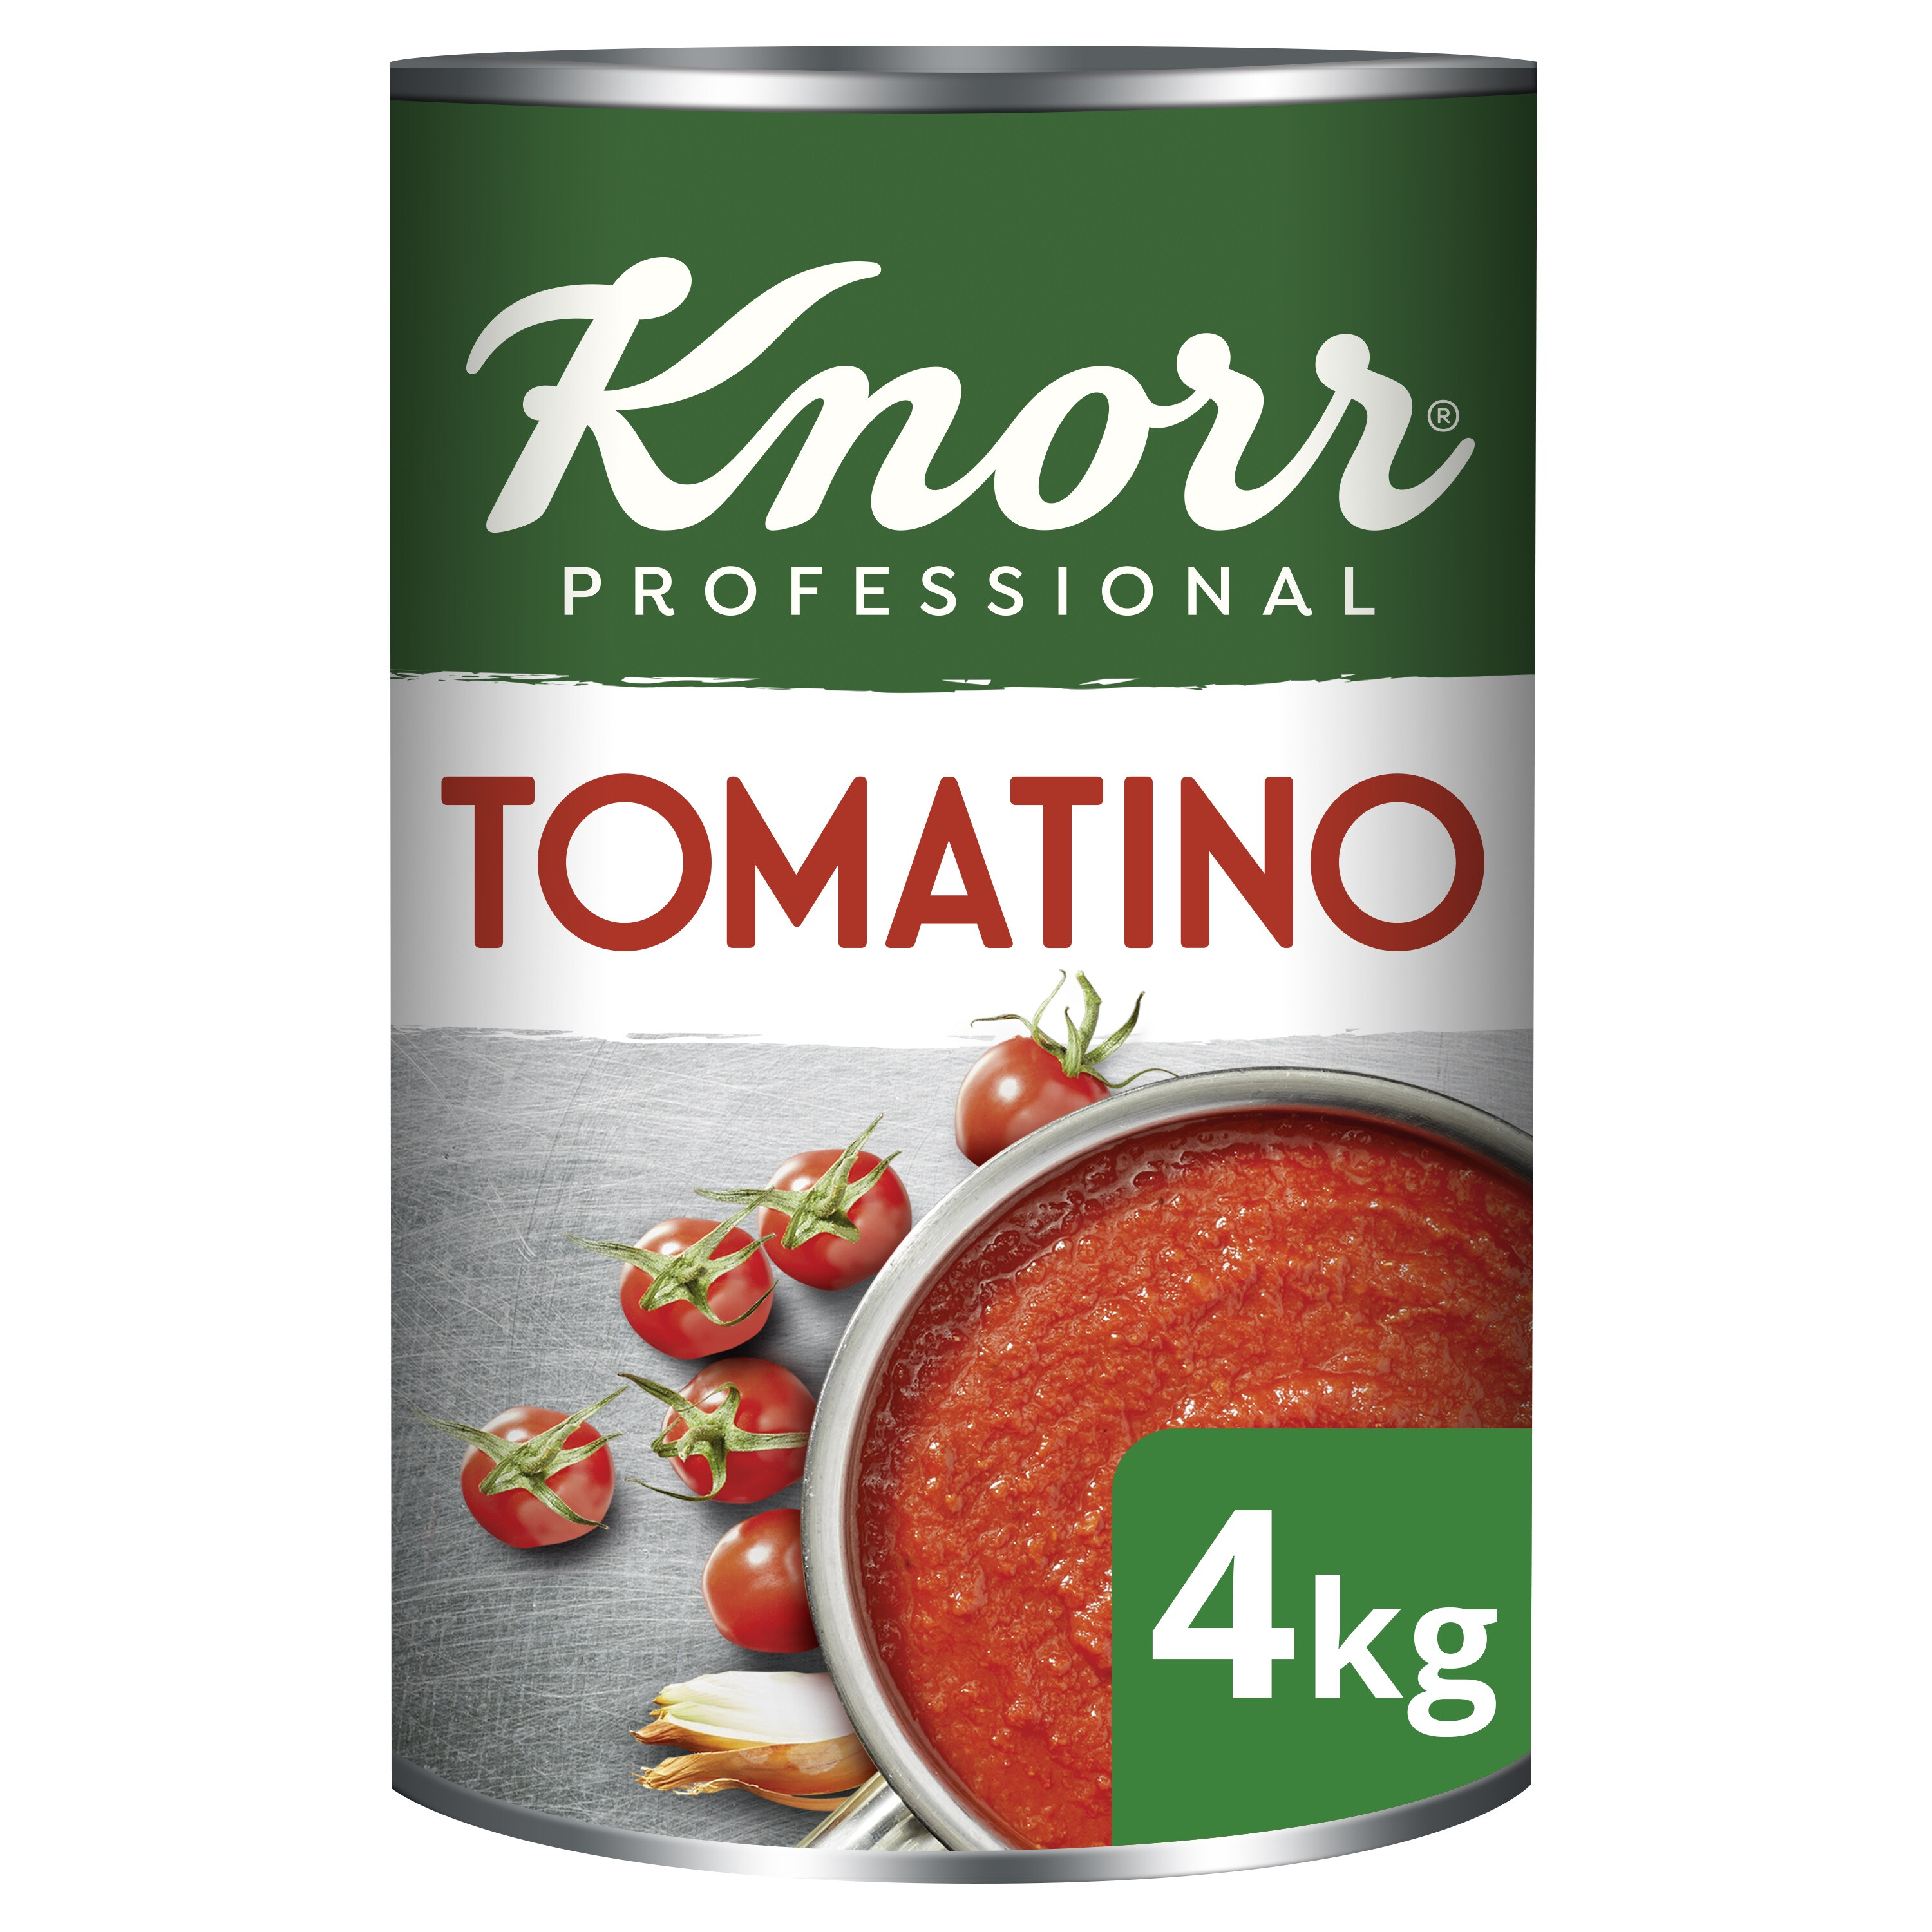 Knorr tomatino 5l blik collezione italiana